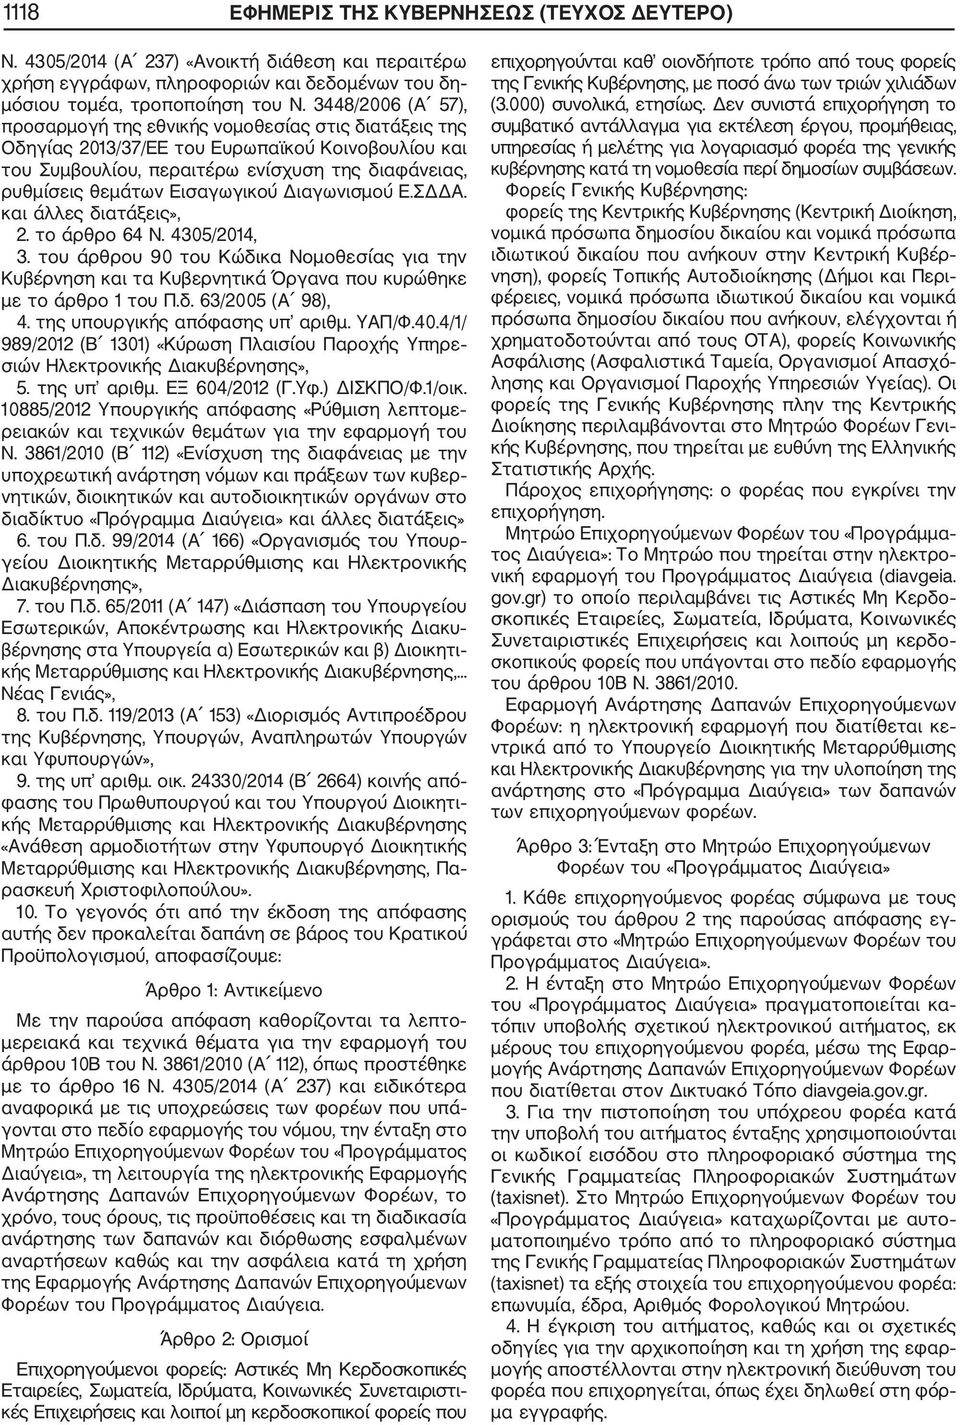 Εισαγωγικού Διαγωνισμού Ε.ΣΔΔΑ. και άλλες διατάξεις», 2. το άρθρο 64 Ν. 4305/2014, 3. του άρθρου 90 του Κώδικα Νομοθεσίας για την Κυβέρνηση και τα Κυβερνητικά Όργανα που κυρώθηκε με το άρθρο 1 του Π.